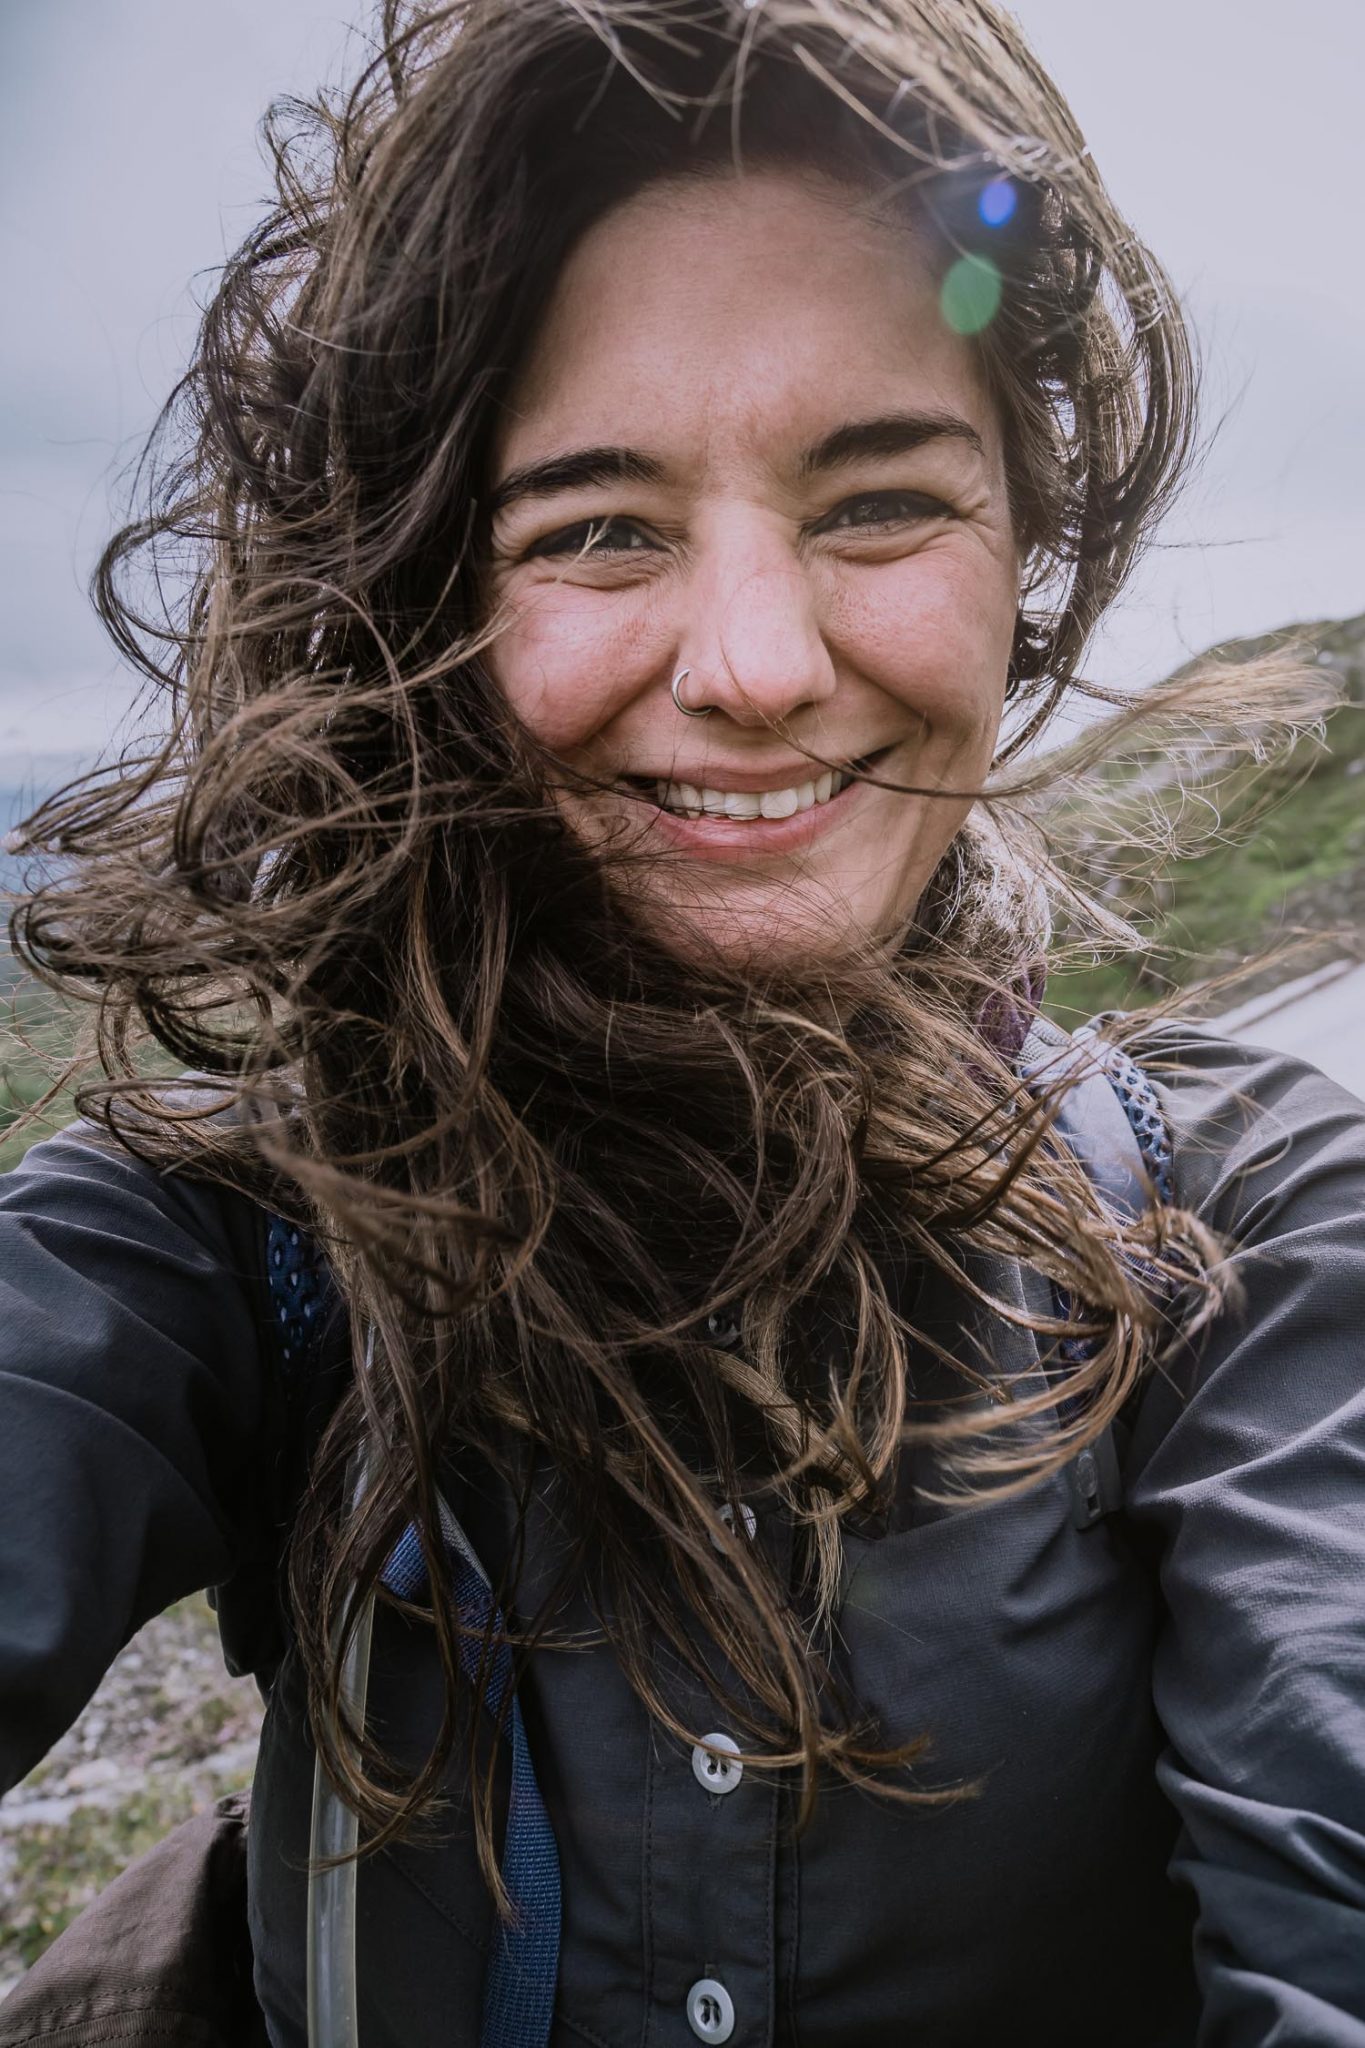 windy selfie of a woman